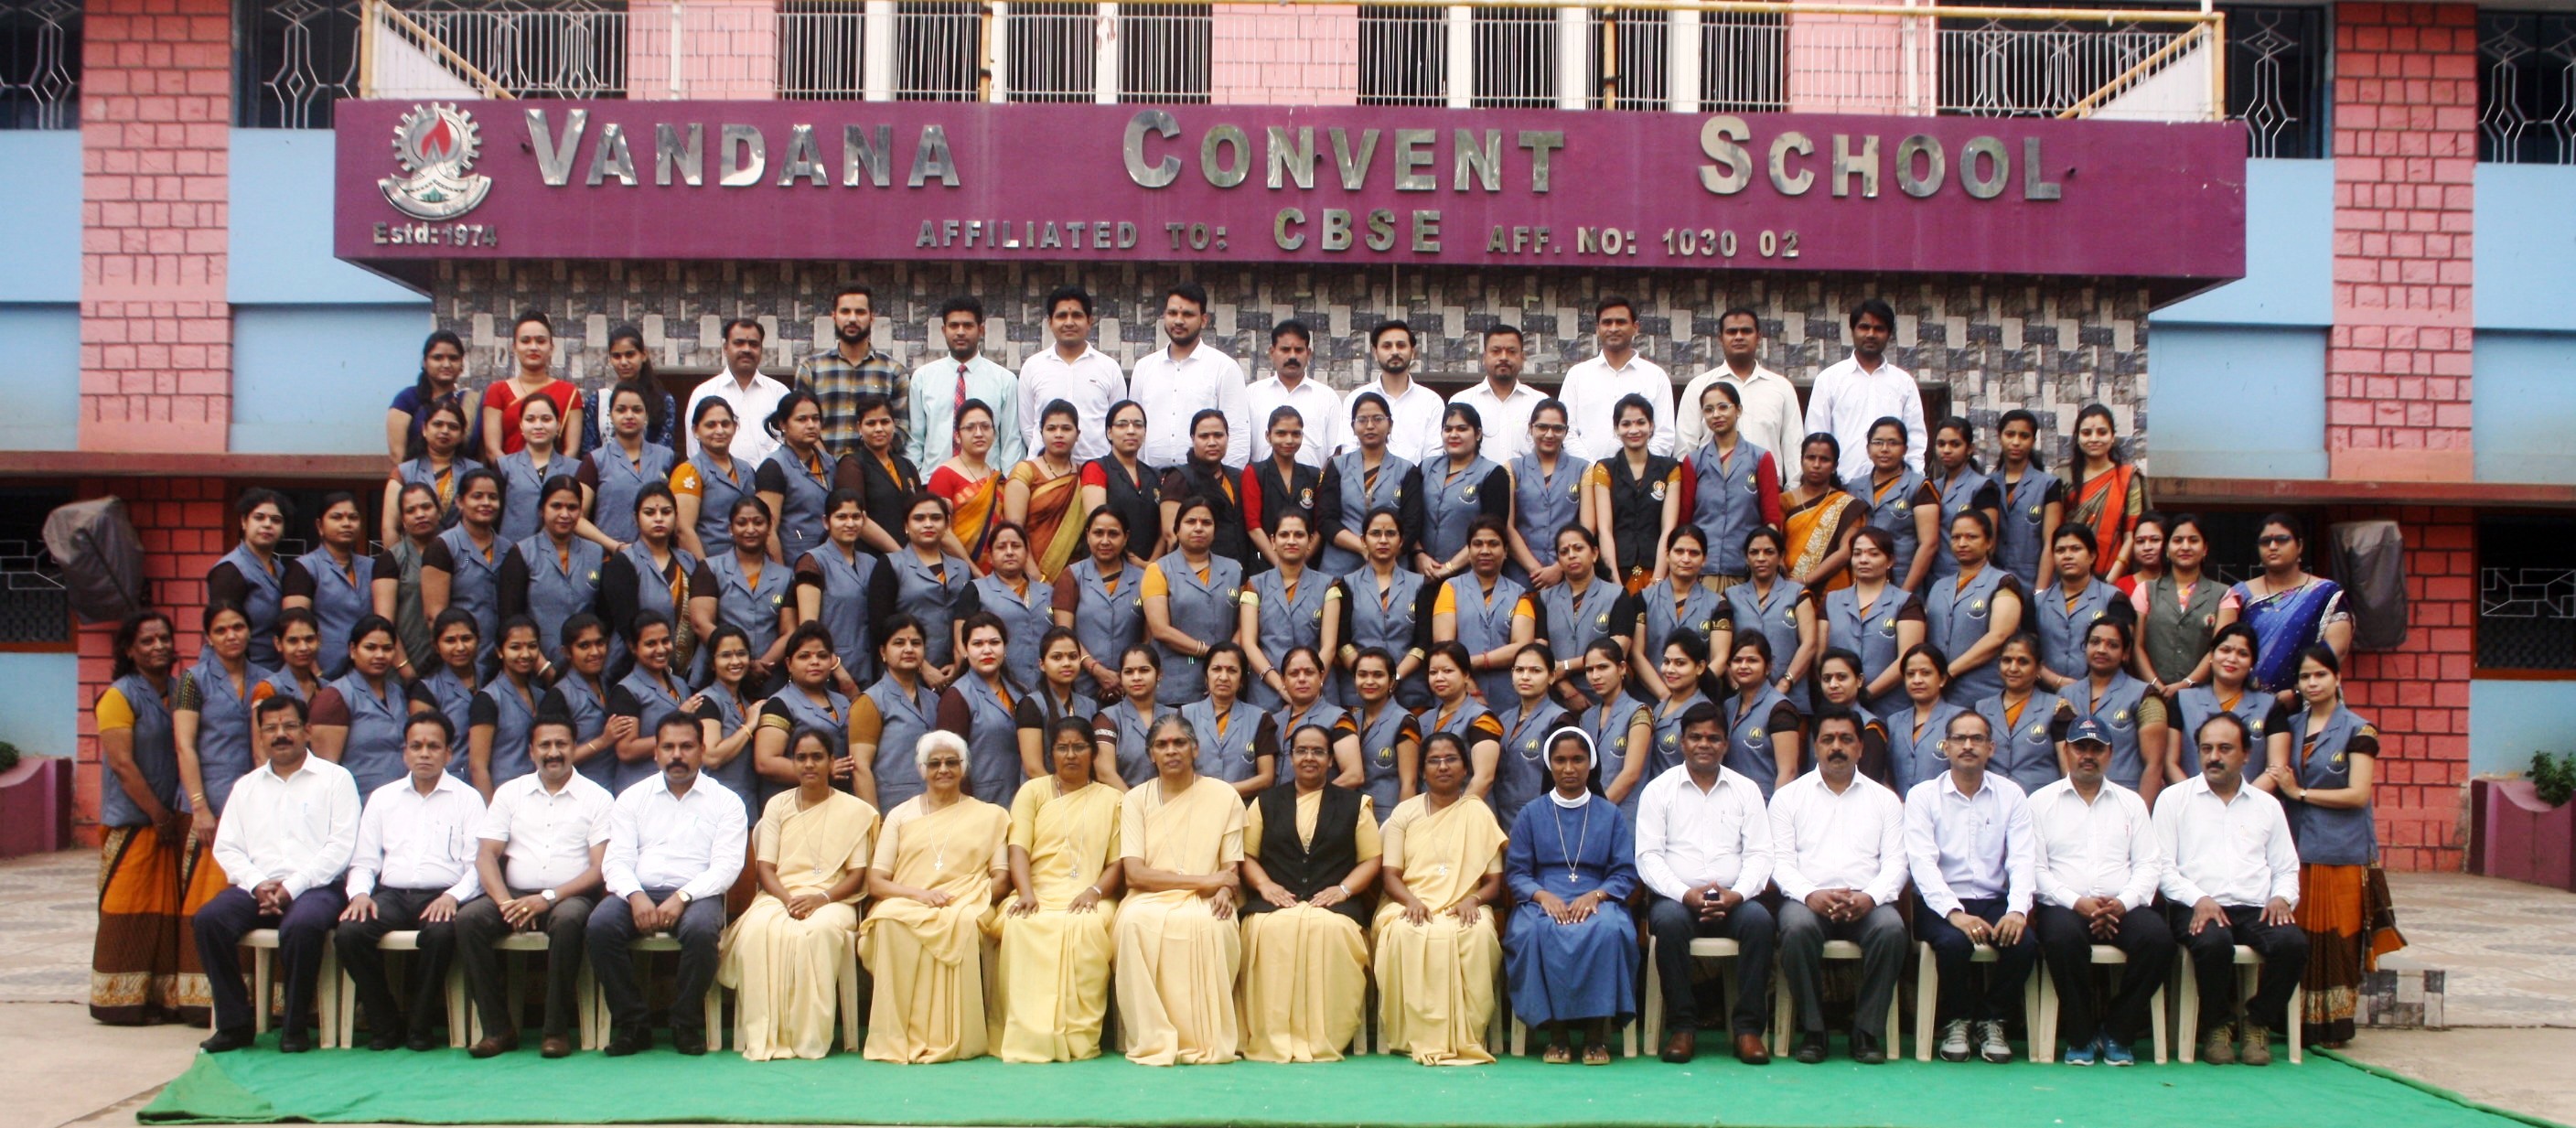 Vandana Convent Sr. Sec.School Education | Schools